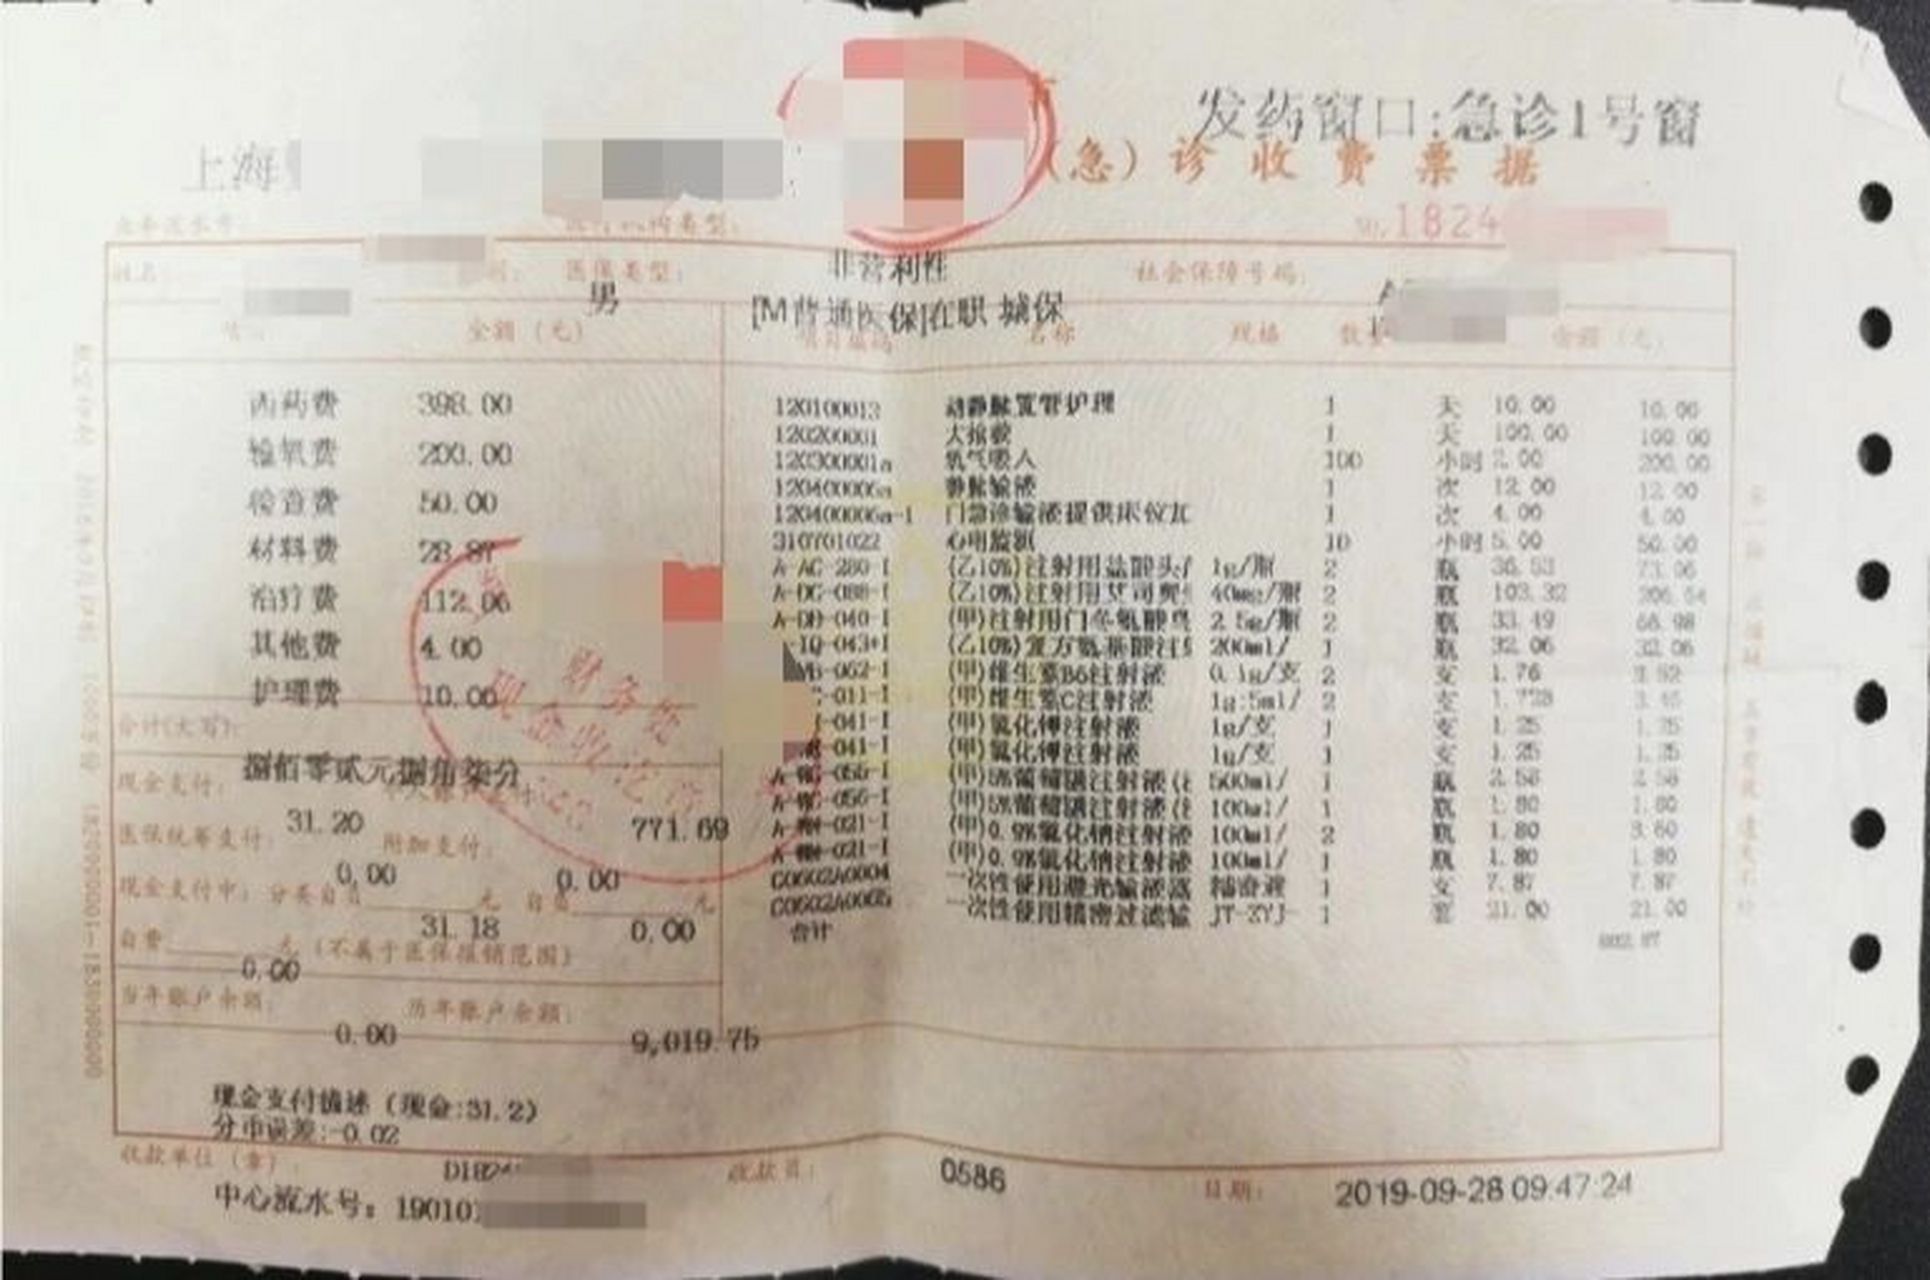 这是上海某医院的门诊发票,我们可以清楚的看到左下方有:现金支付